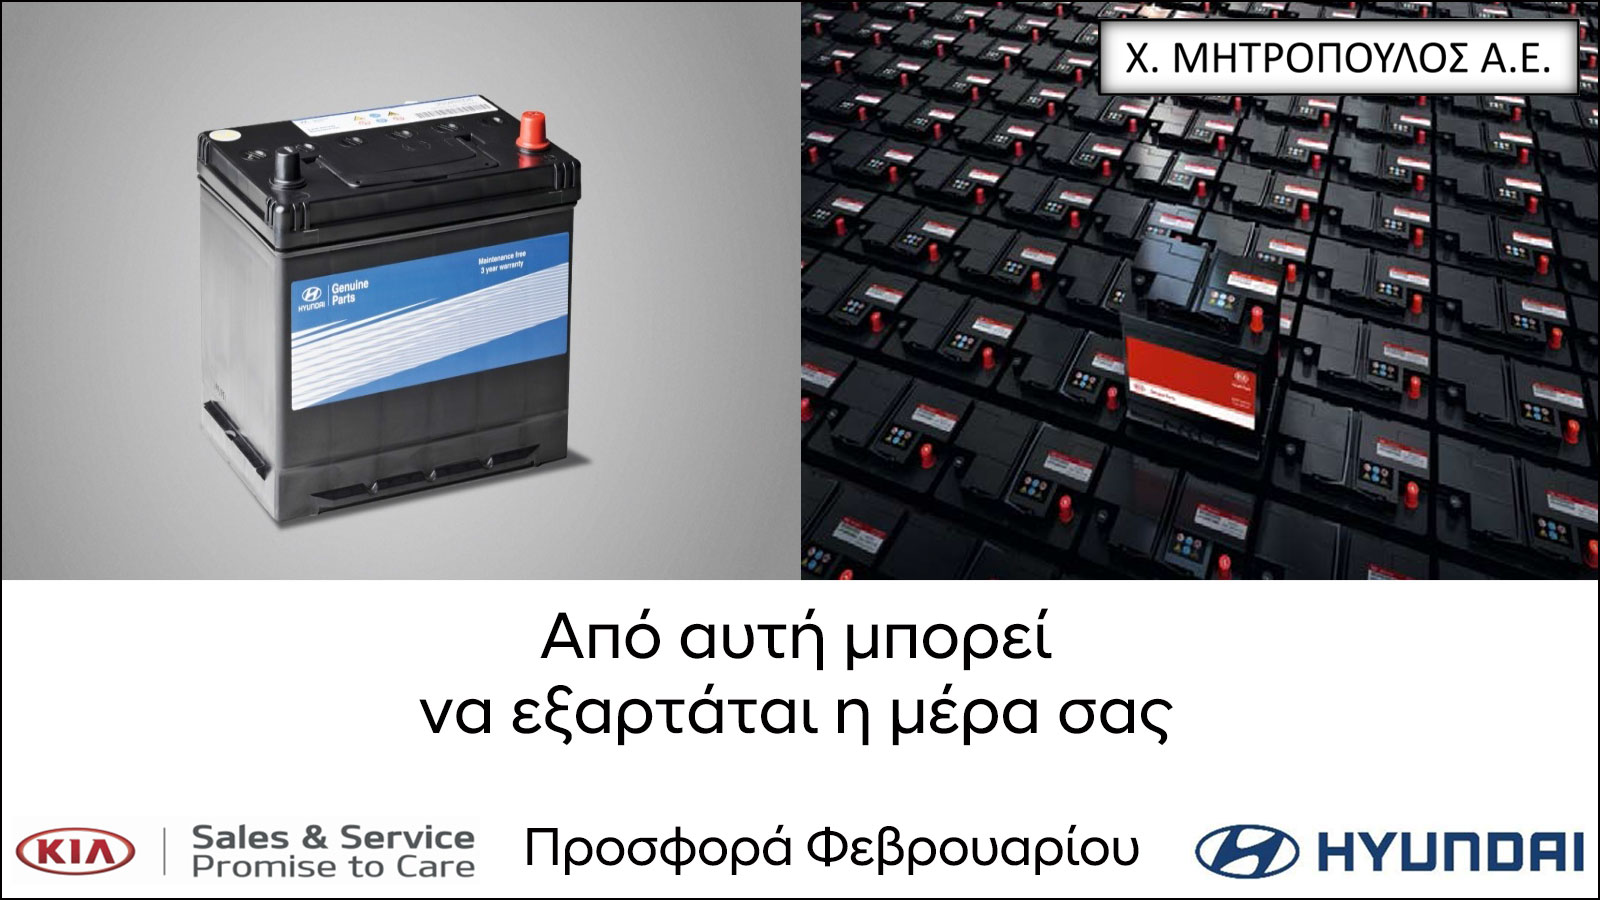 Μοναδική προσφορά για μπαταρίες Hyundai - Kia στην Μητρόπουλος ΑΕ 